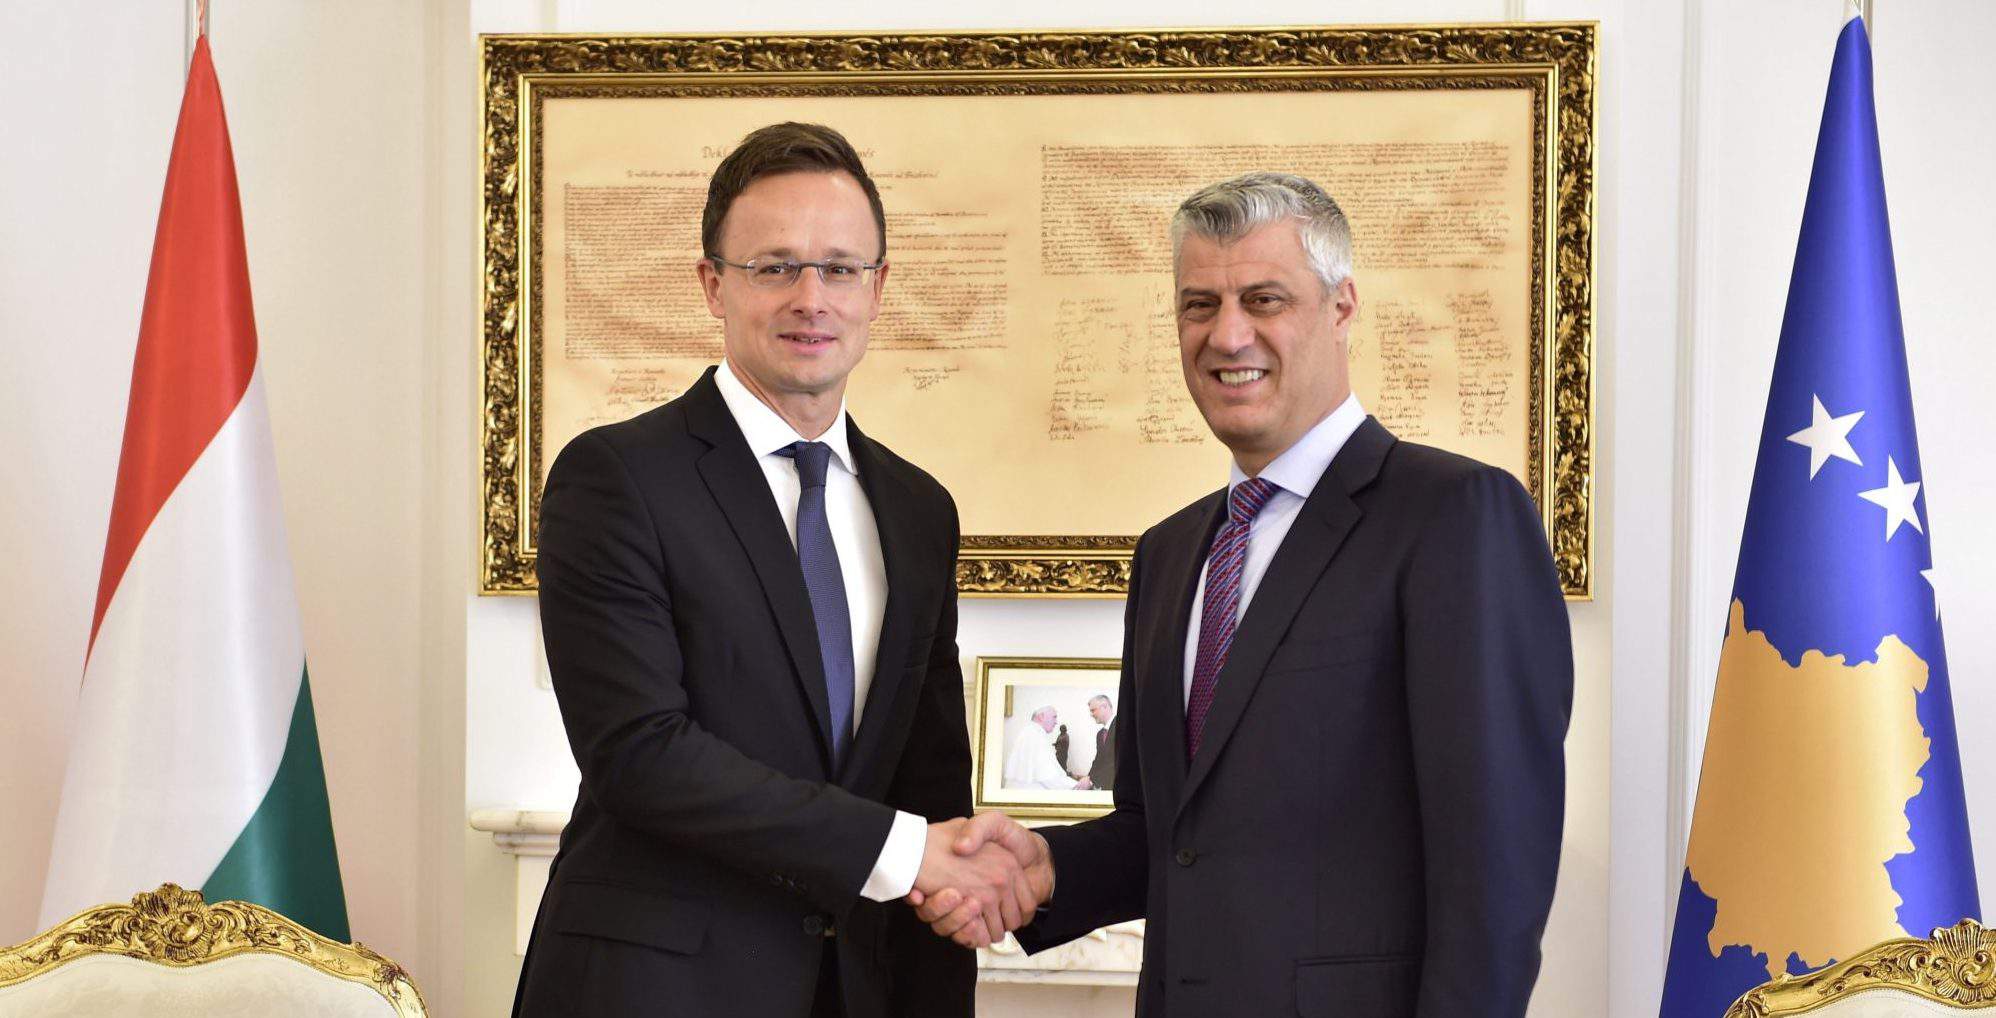 Pristina Ministro degli esteri ungherese